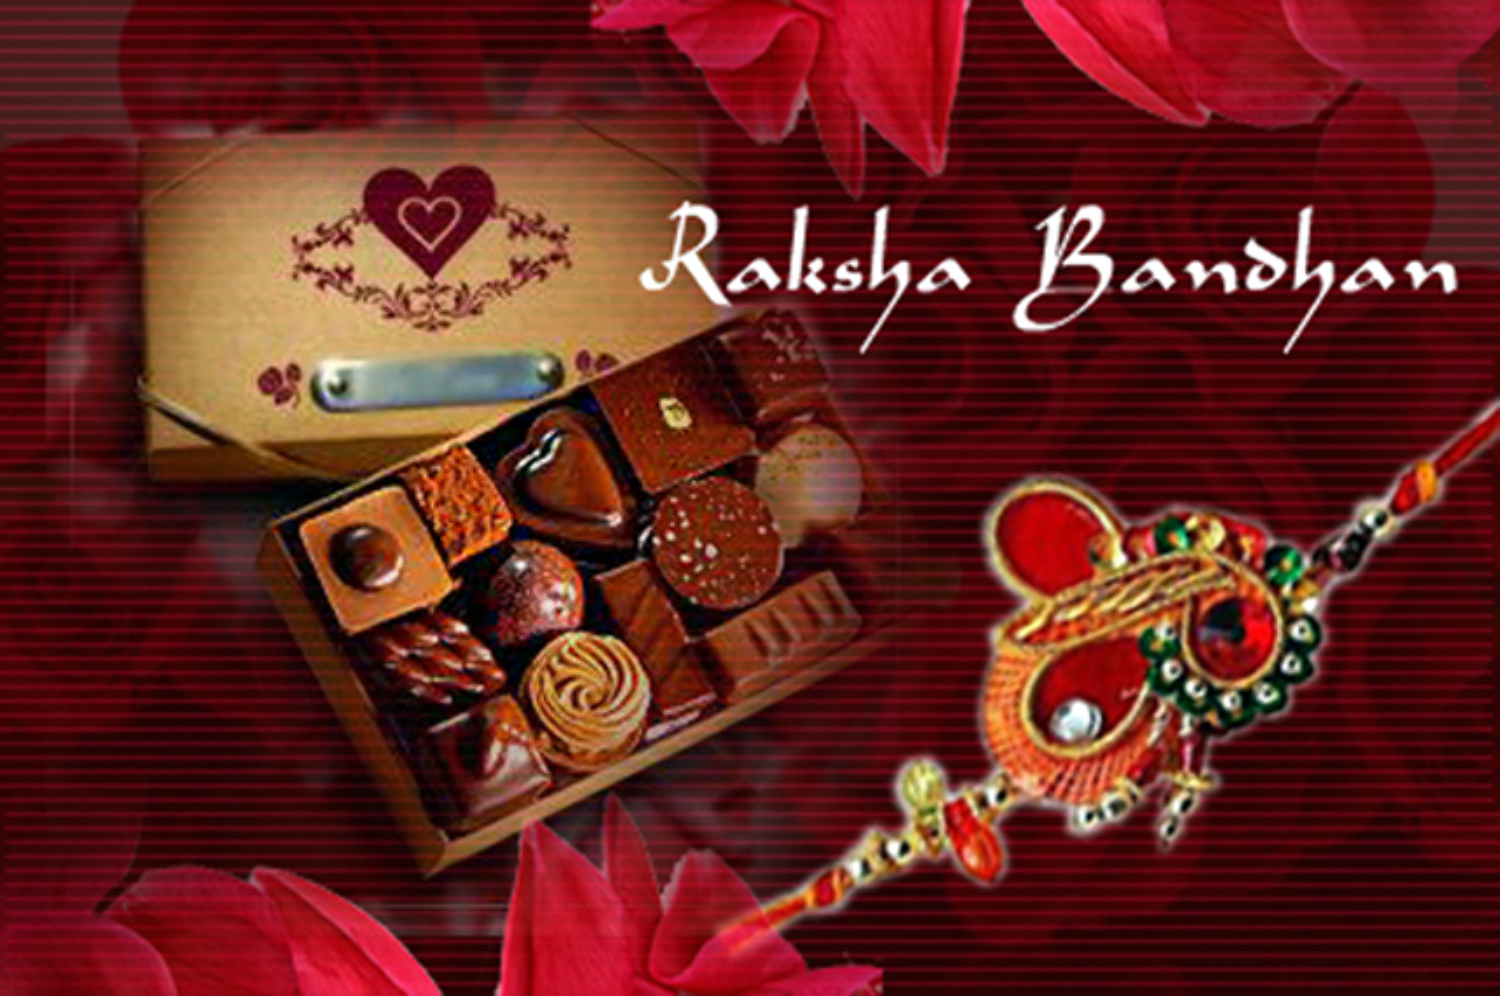 http://datastore01.rediff.com/h1500-w1500/thumb/69586A645B6D2A2E3131/sx46j6f1s7el7les.D.0.Happy-Raksha-Bandhan-Festival-Greetings.jpg